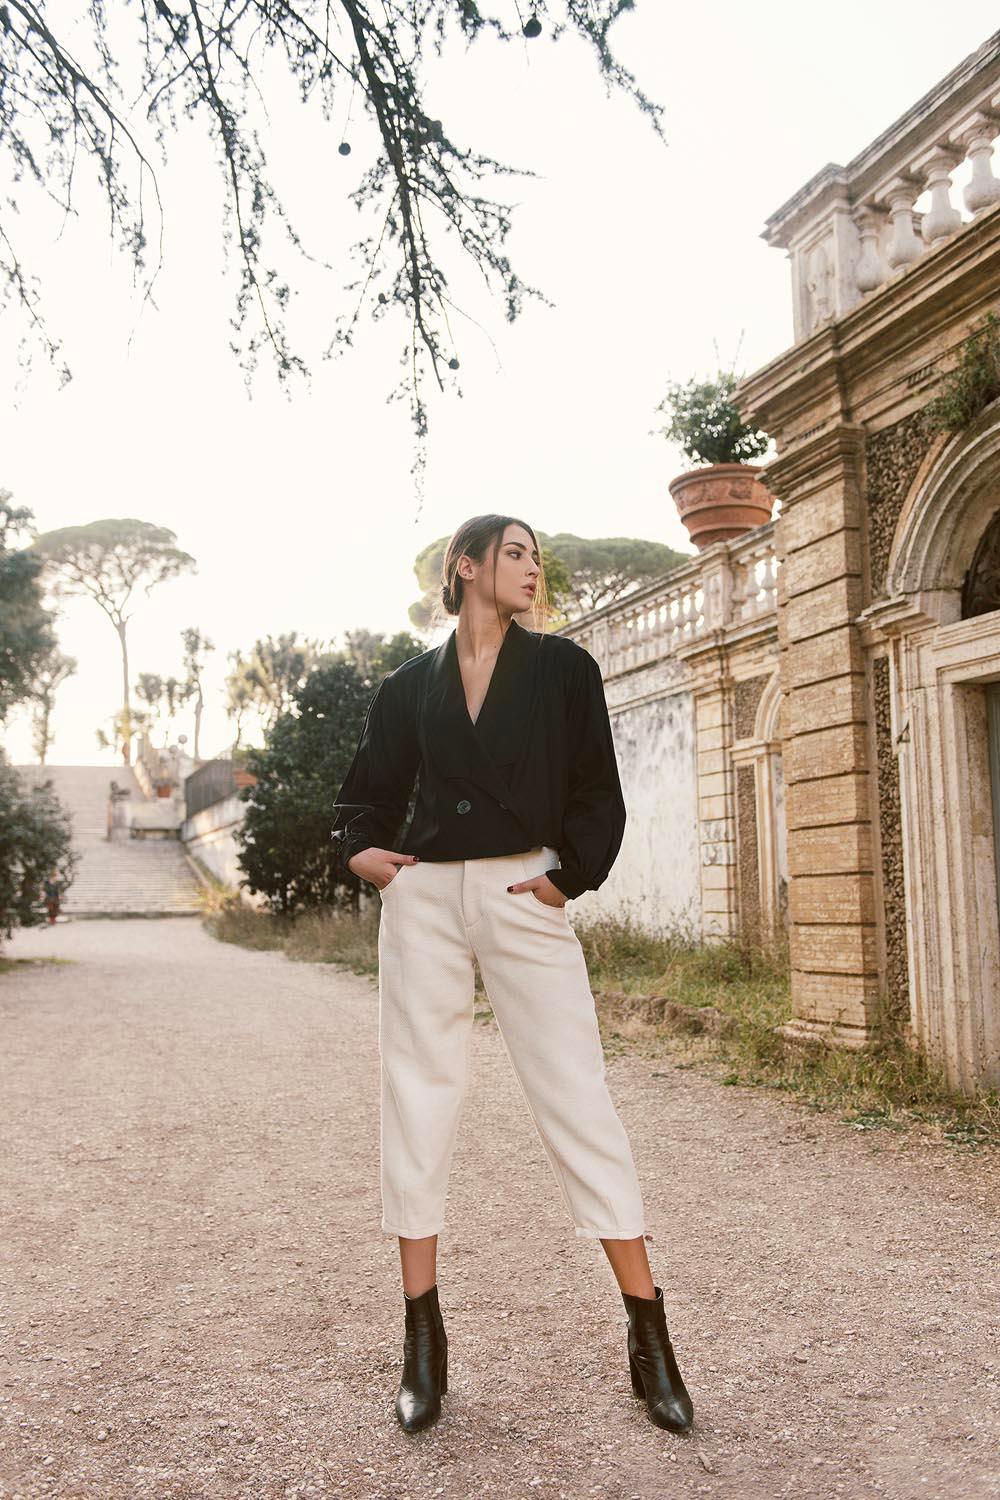 Pantalone Marrakech cotone lana lino canapa comodo vestibilita comoda brand malia lab moda etica abbigliamento sostenibile vestiti sostenibili donna in fibre naturali